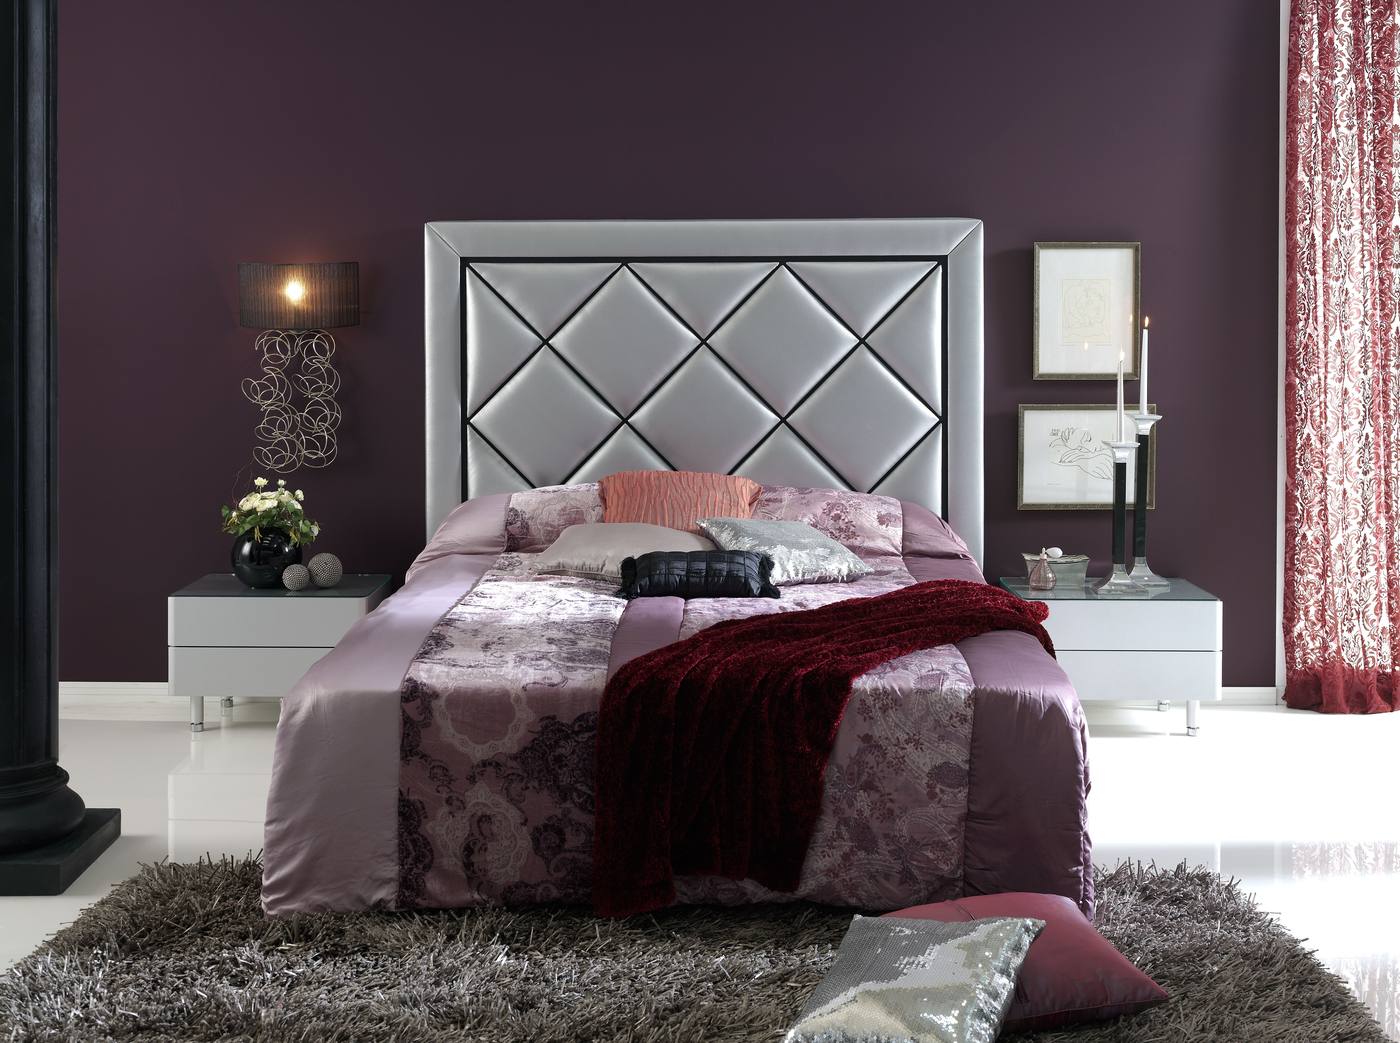 Cabezal LD Tamara - Cabecero tapizado en polipiel para cama de 150 cm, disponible en varios colores.